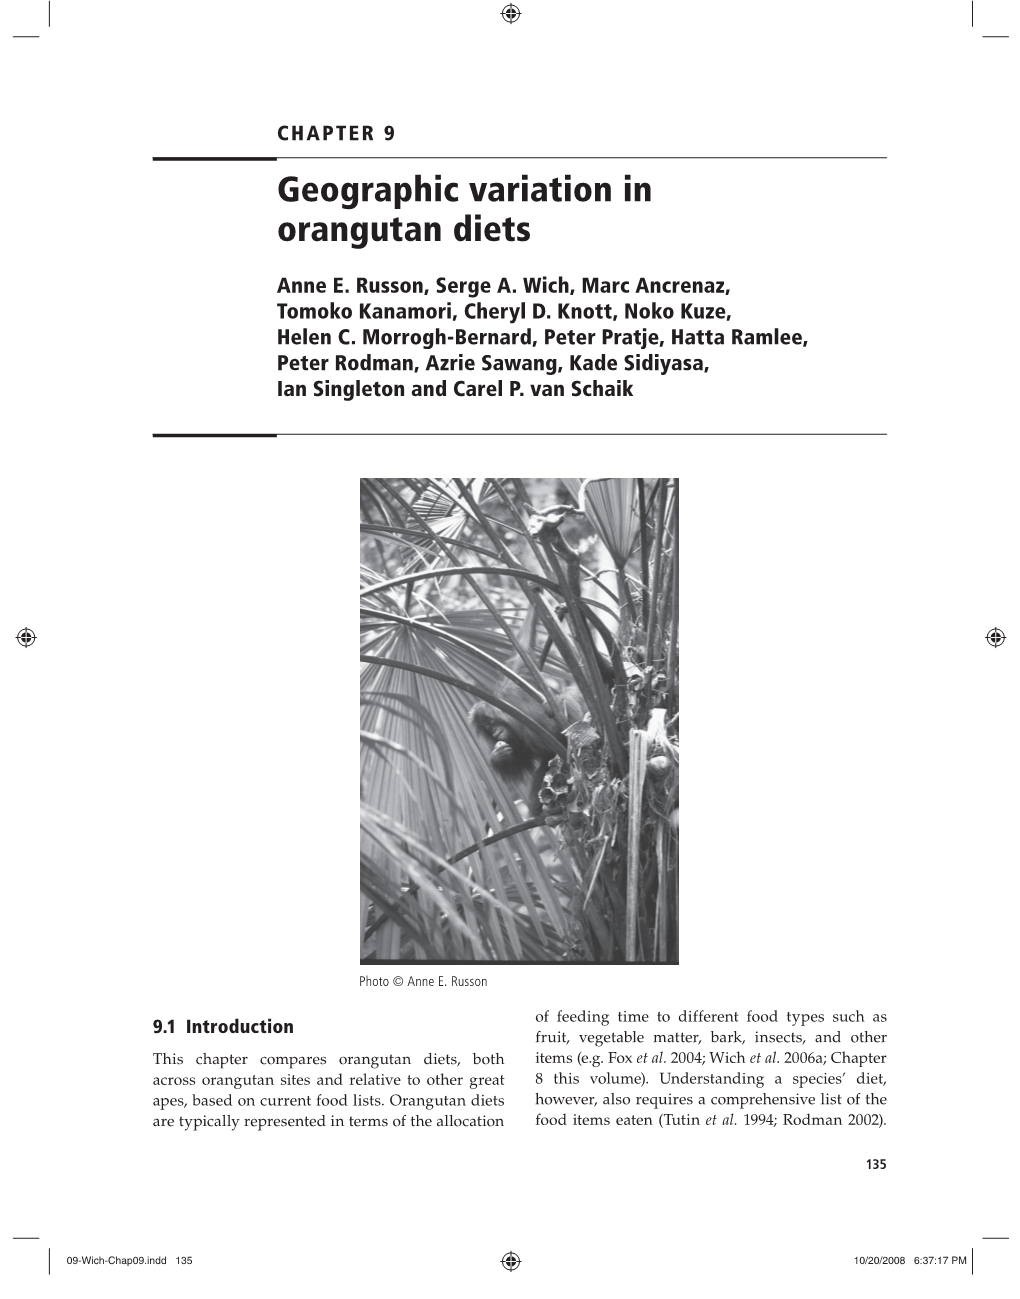 Geographic Variation in Orangutan Diets